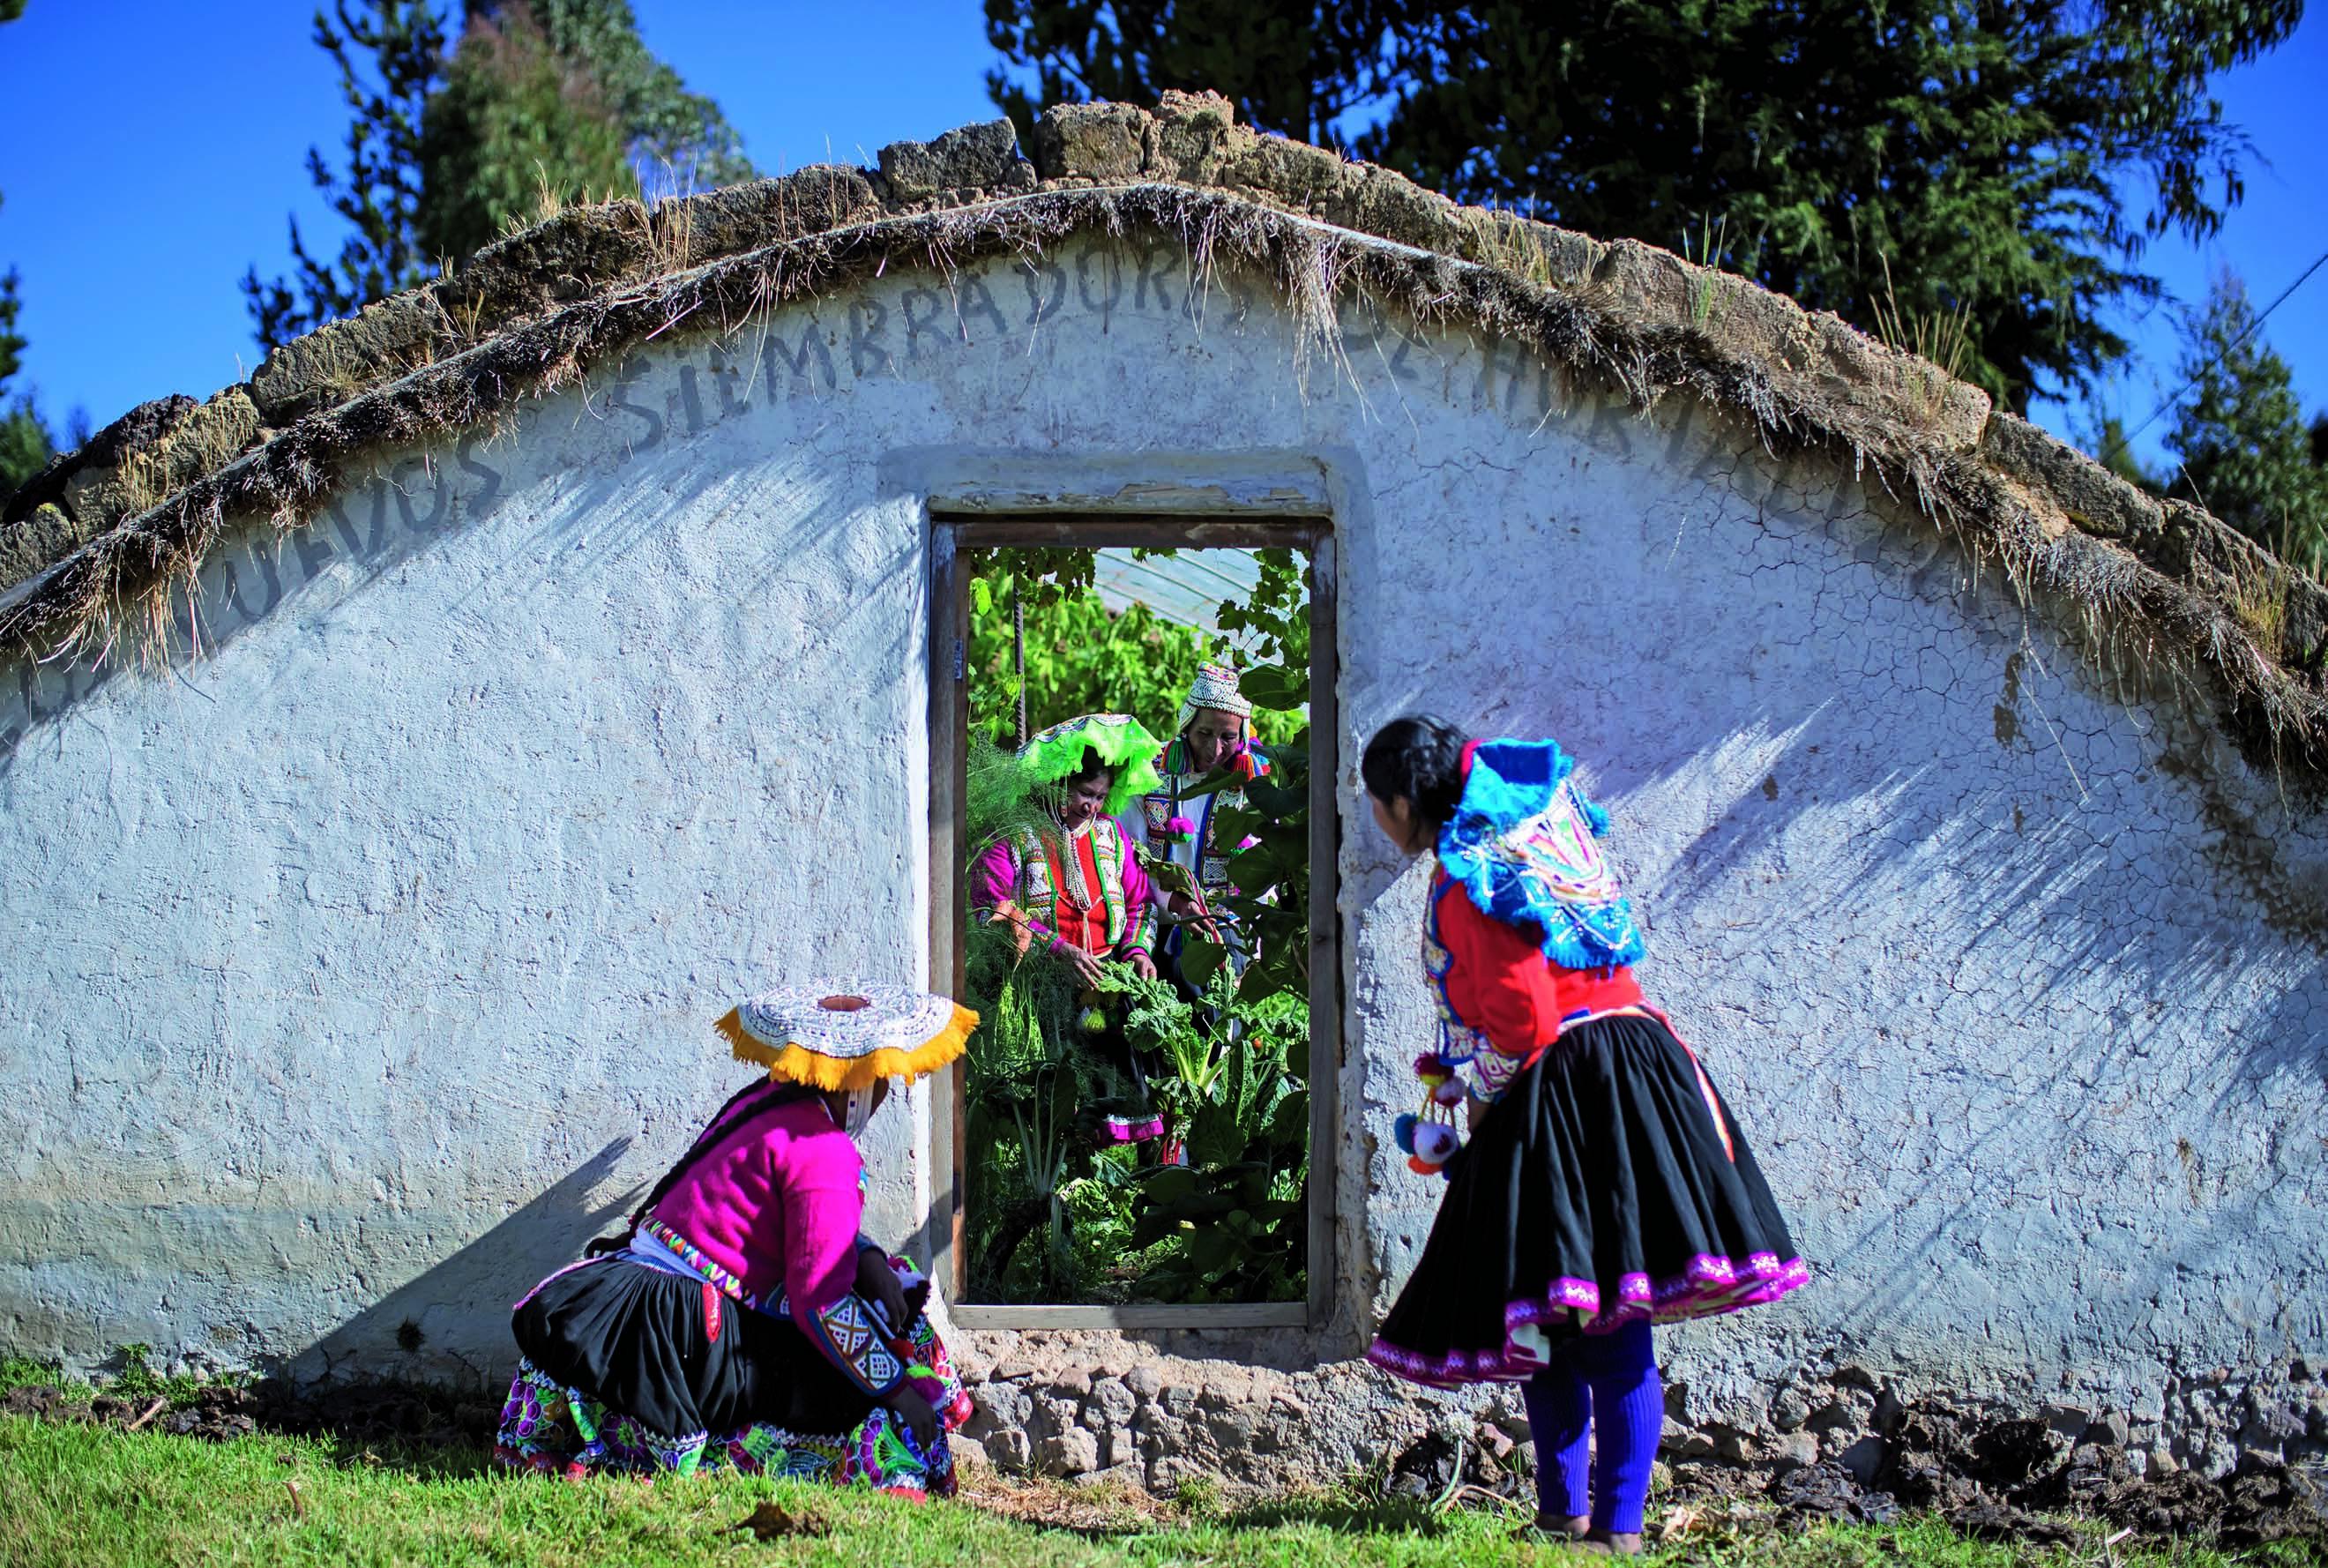 En Lauramarca (Cusco), Jesus Condori y Guadalupe Quispe han cultivado frutas y hortalizas a 4.200 metros sobre el nivel del mar gracias a un biohuerto con fitotaldo, que ha mejorado su calidad de vida. (Foto: Enrique Castro Mendívil)